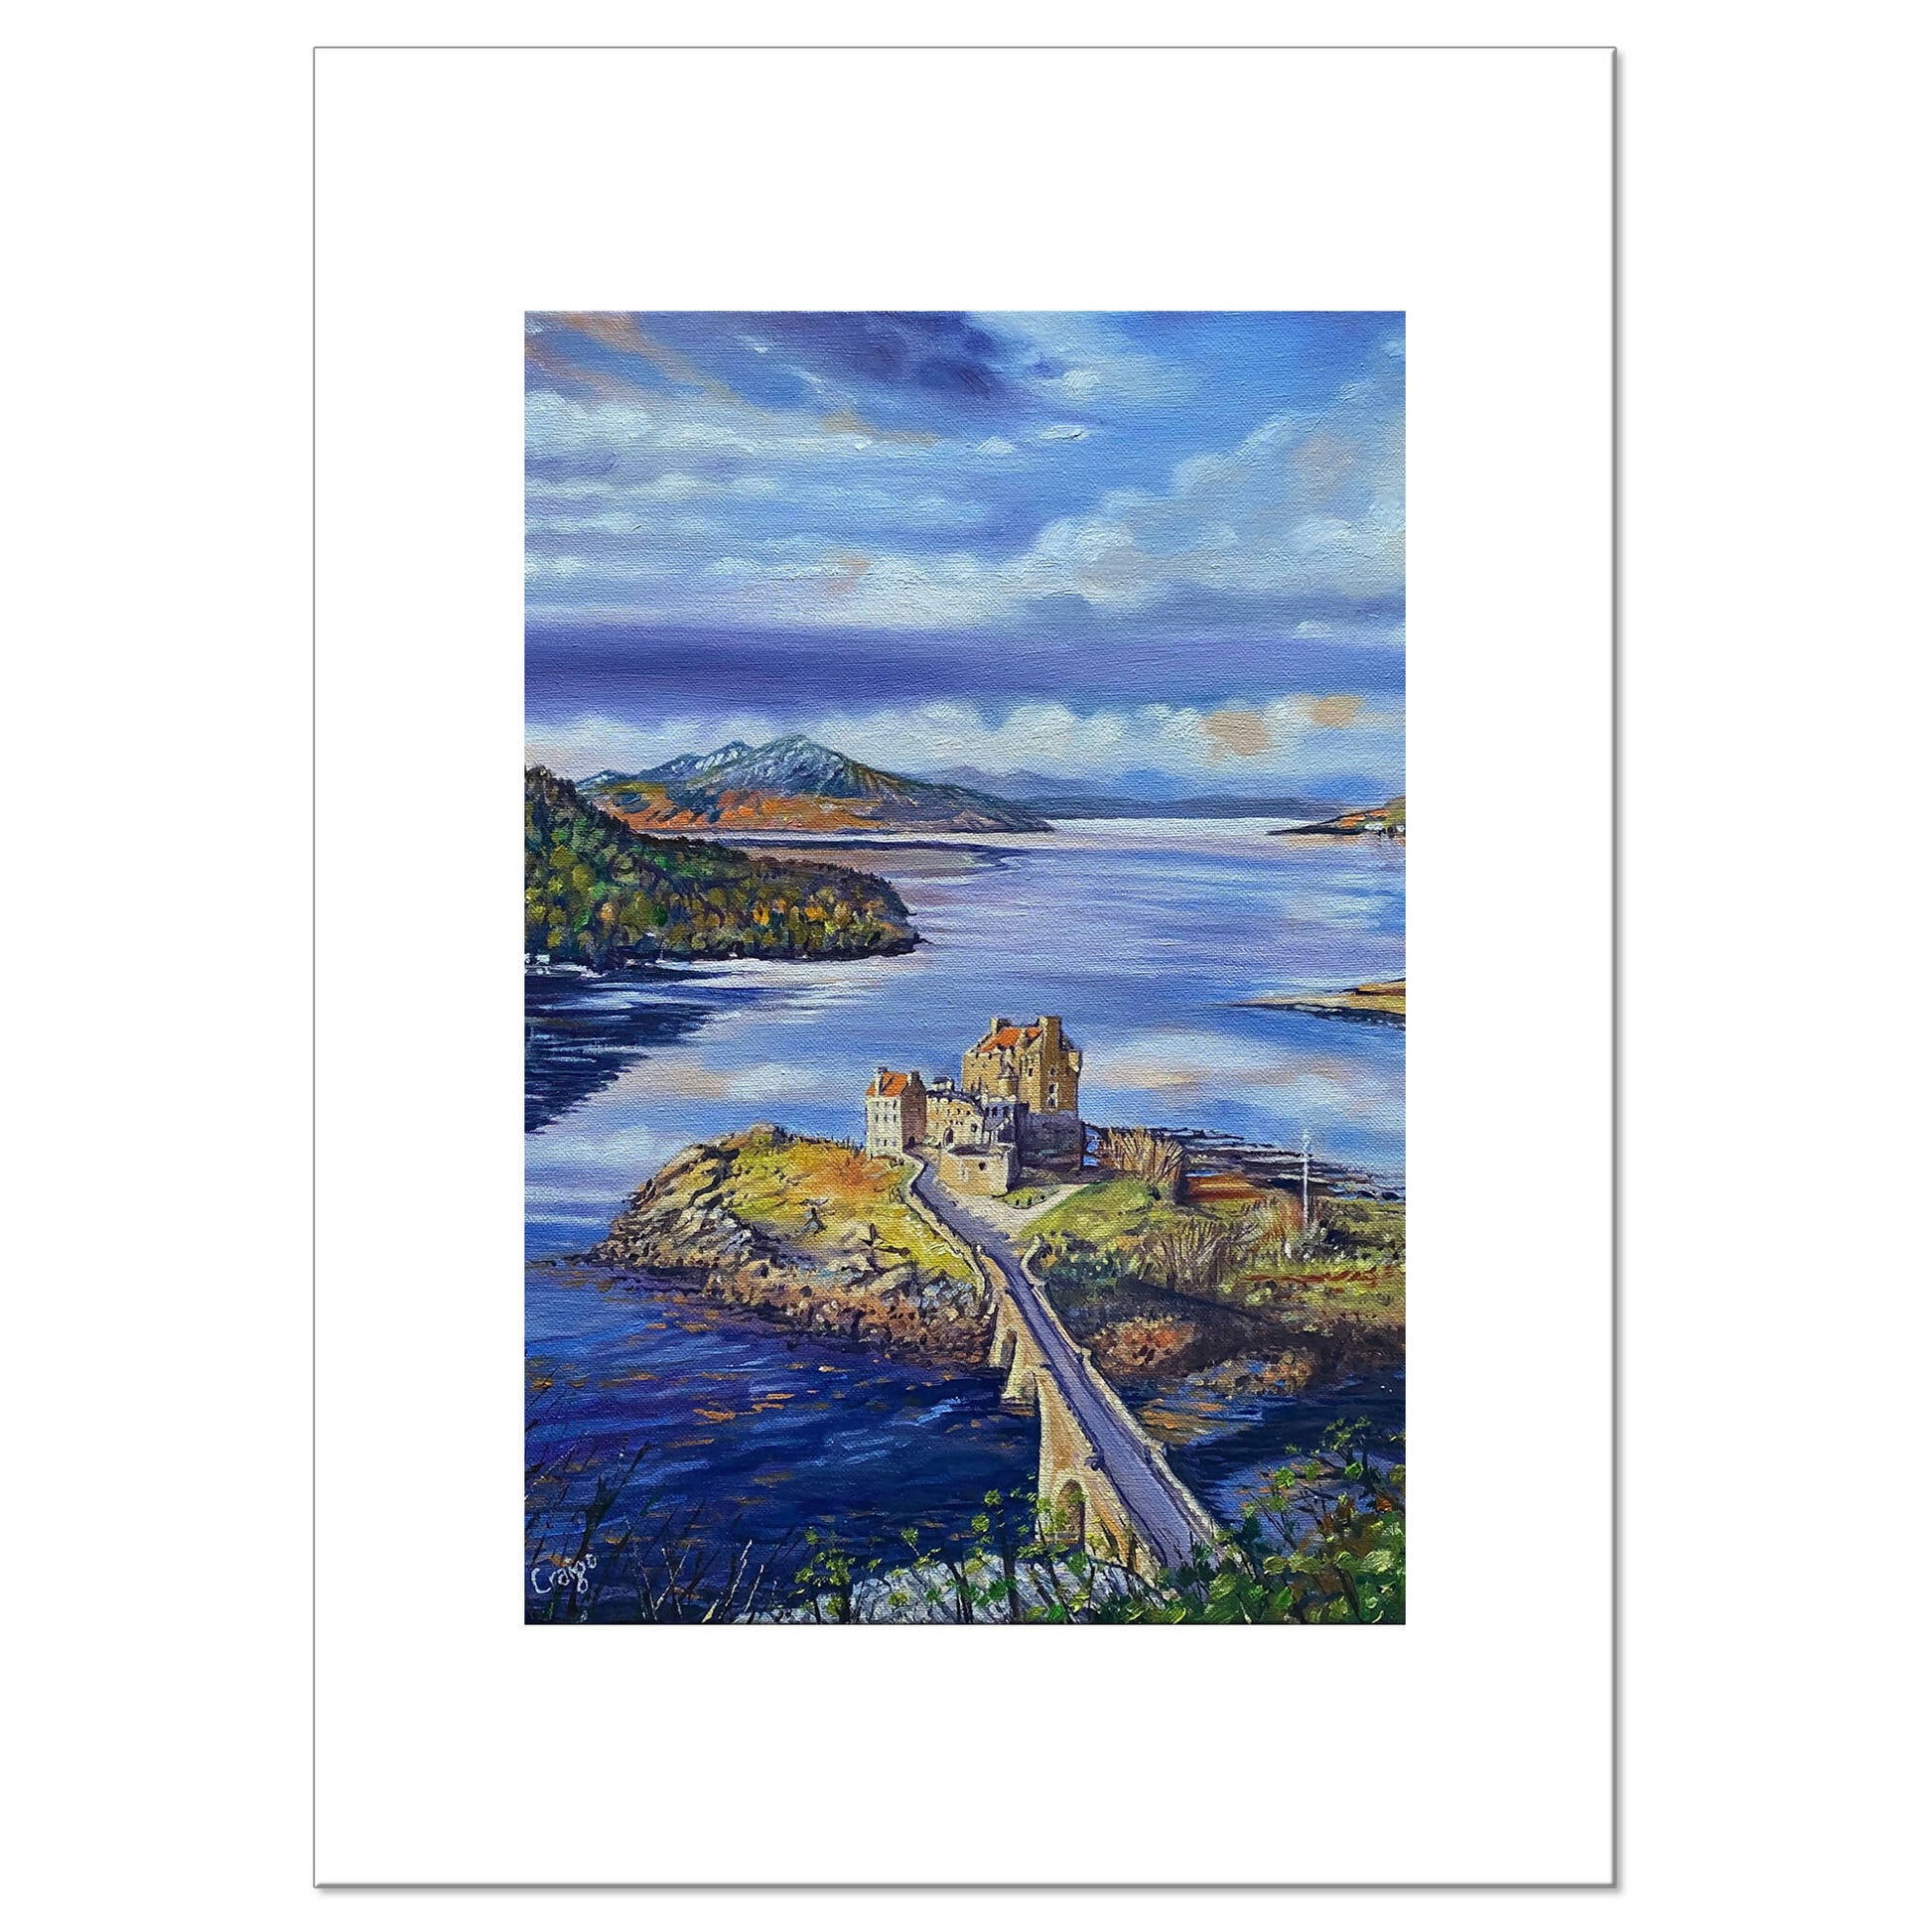 Eilean Donan Castle, Scottish Highlands painting by Scottish Artist Craigo